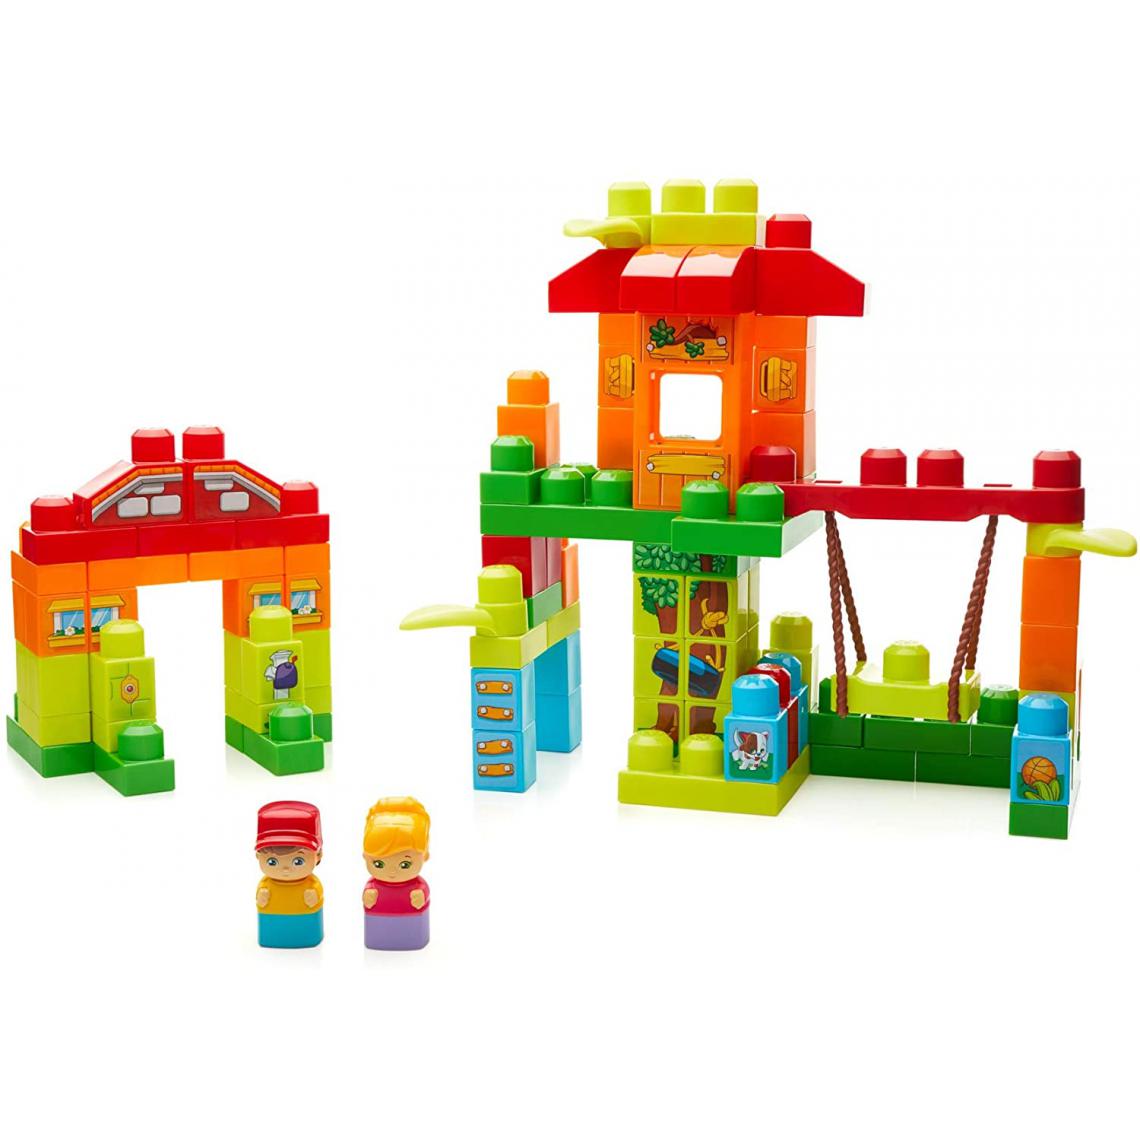 MEGA BLOKS - La Maison dans L'Arbre de blocs de construction de 120 pièces pour bébé et enfant de 1 à 5 ans - Briques et blocs